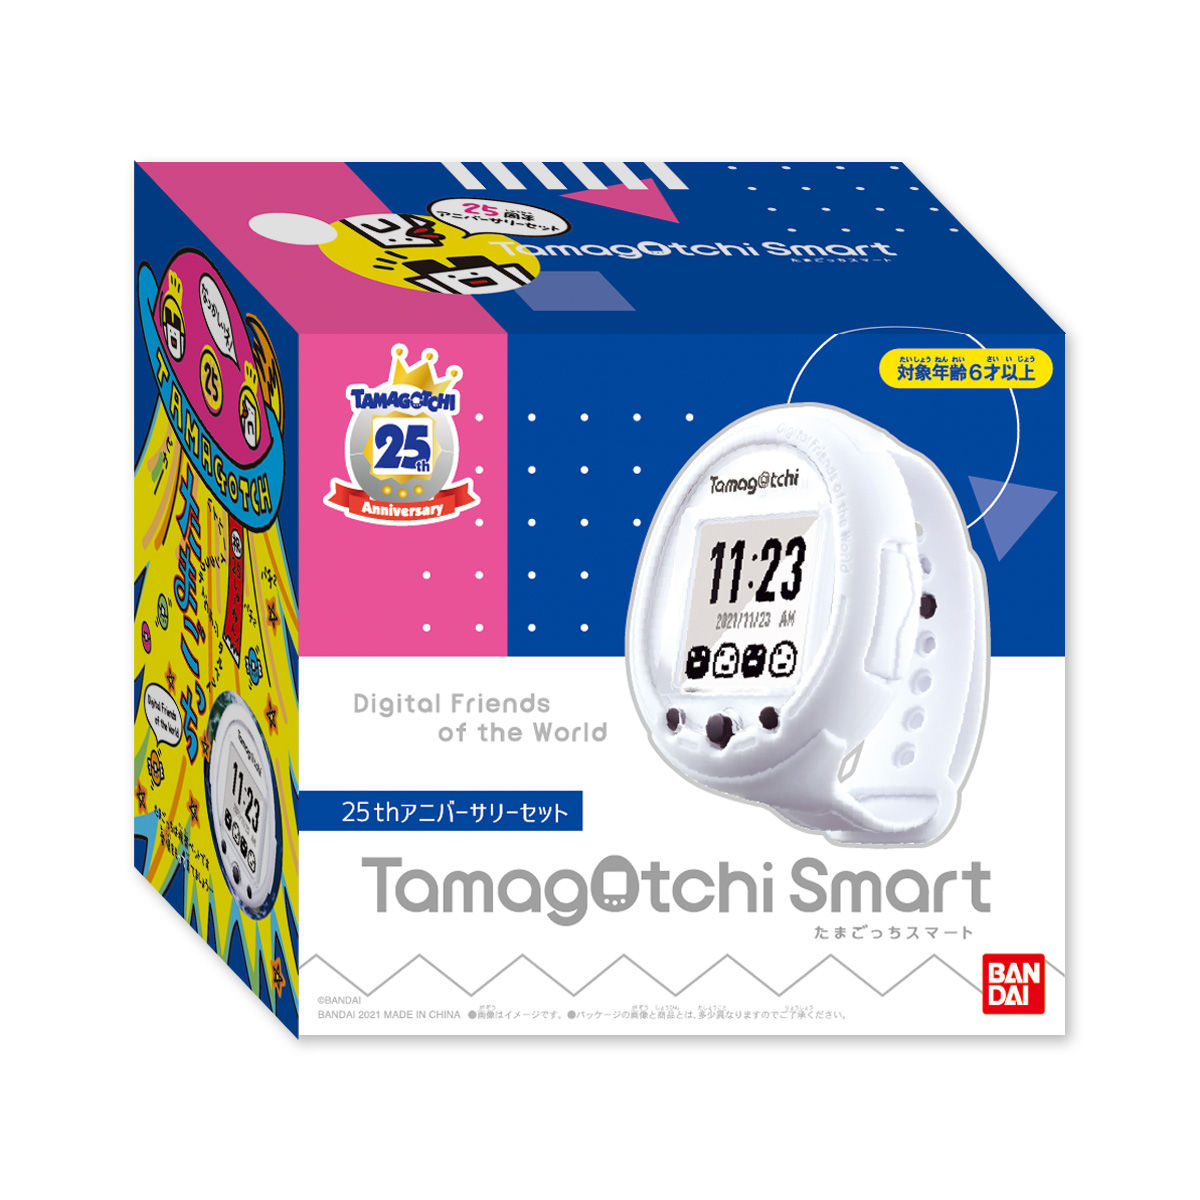 【抽選販売】たまごっちスマート『Tamagotchi Smart 25th アニバーサリーセット』たまごっち-008